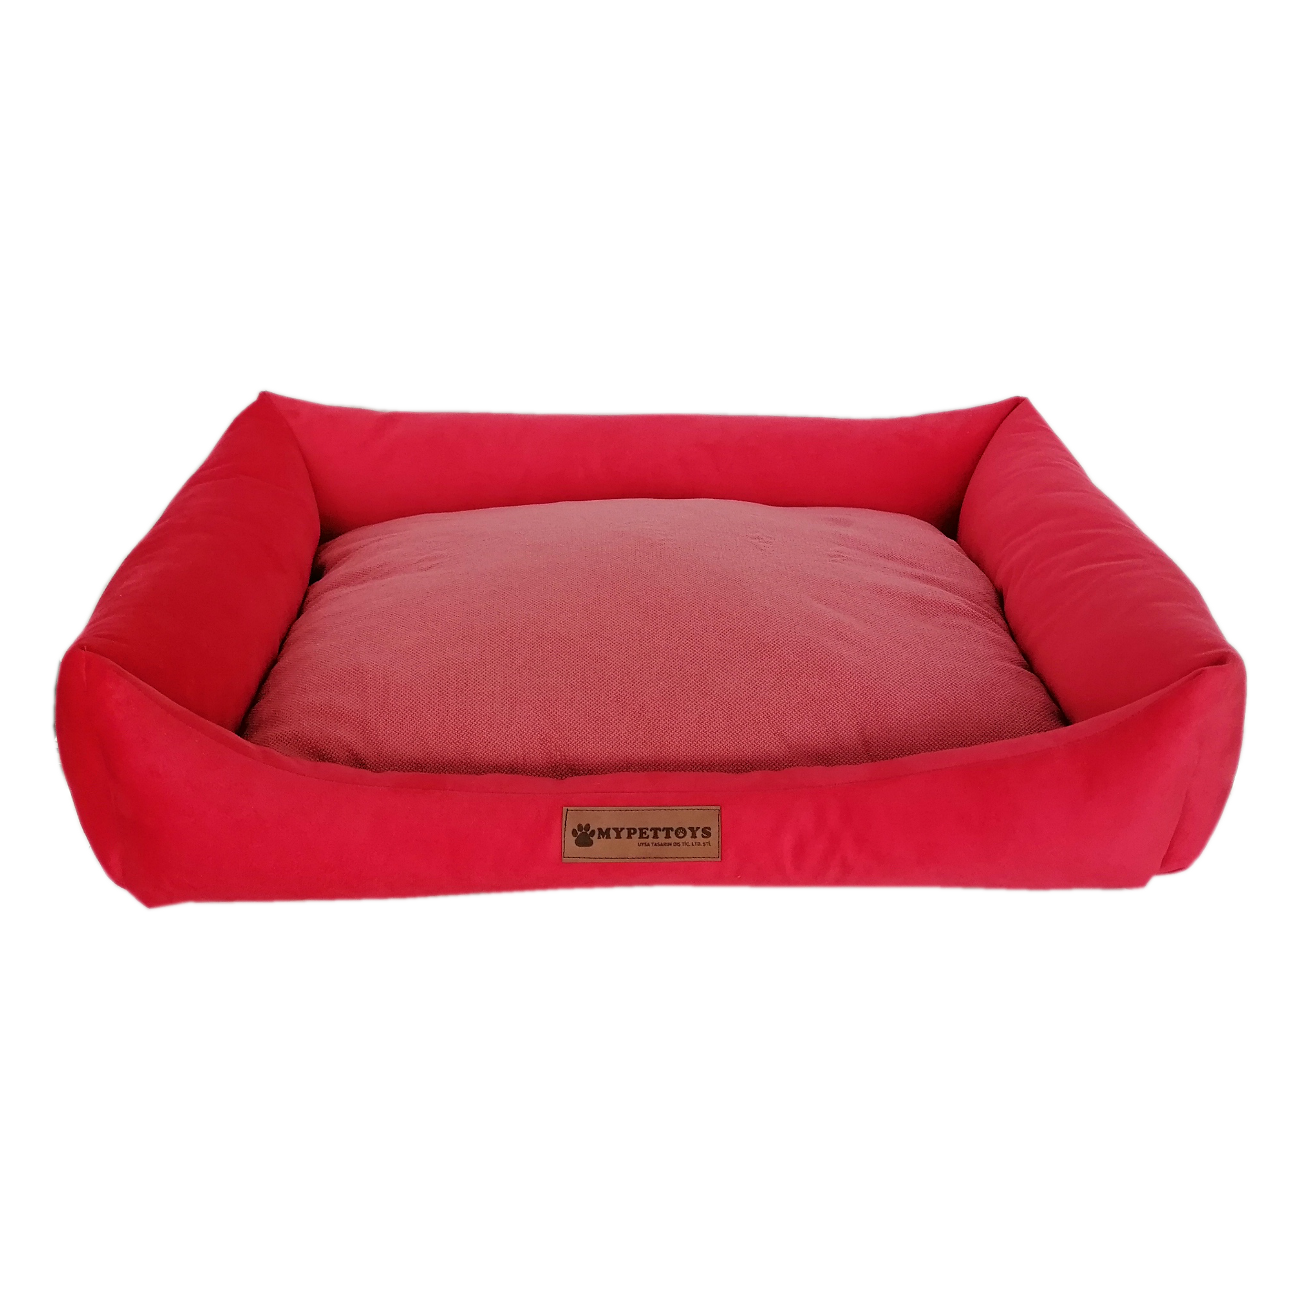 Tay Tüyü Yumuşak Köpek Yatağı Large Kırmızı 60*80 cm